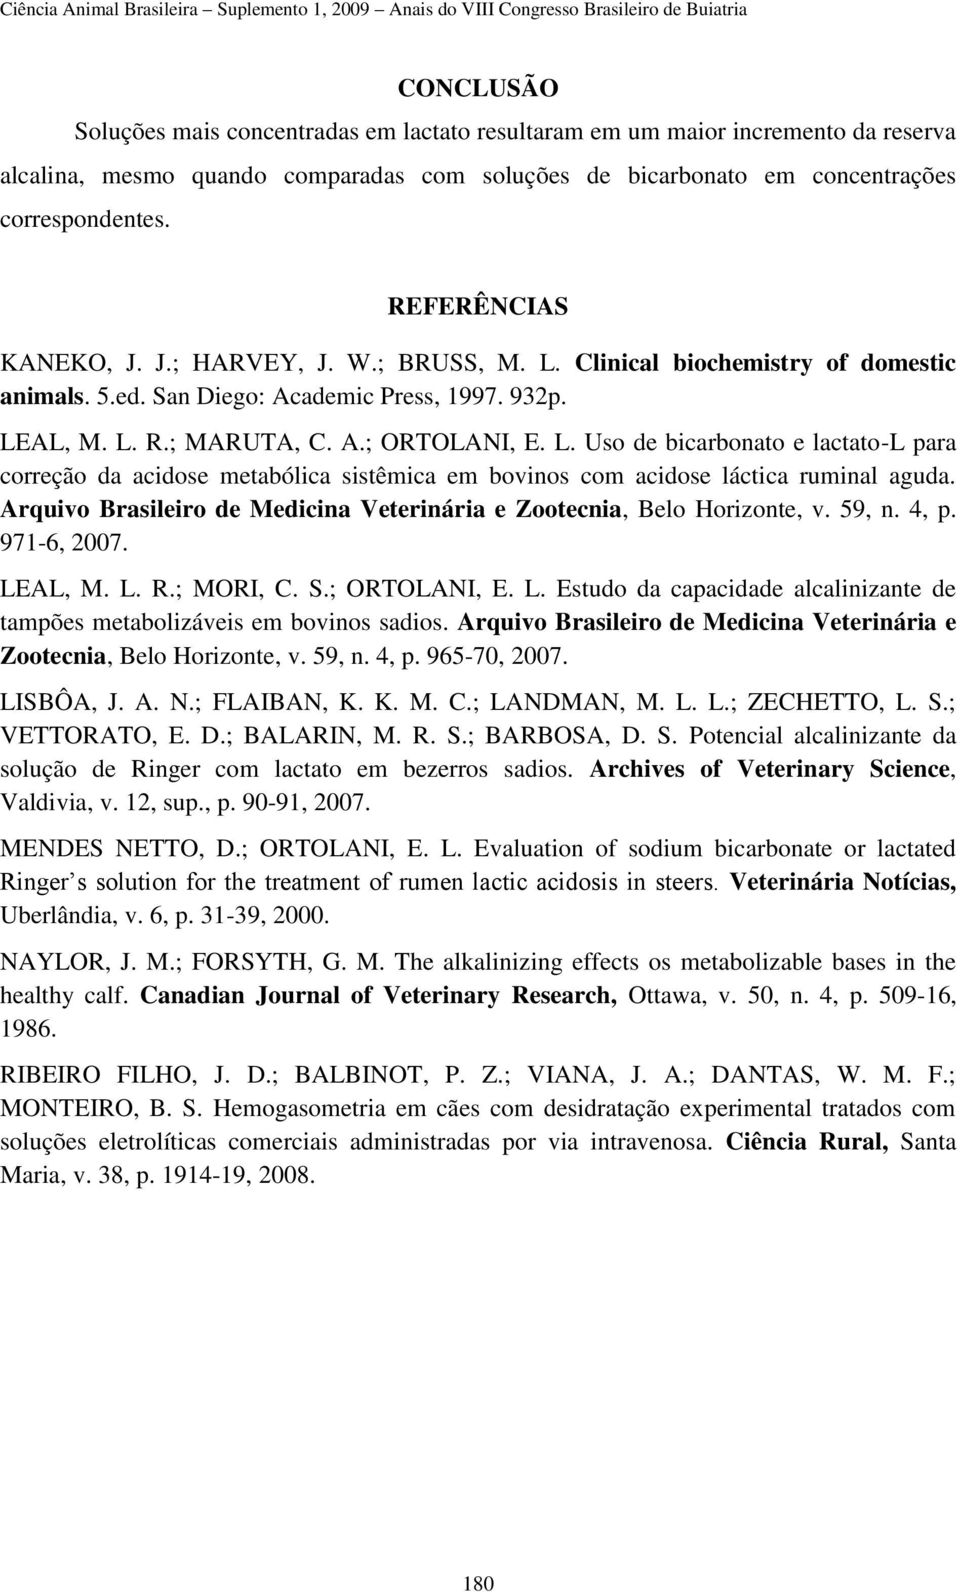 Arquivo Brasileiro de Medicina Veterinária e Zootecnia, Belo Horizonte, v. 59, n. 4, p. 971-6, 2007. LEAL, M. L. R.; MORI, C. S.; ORTOLANI, E. L. Estudo da capacidade alcalinizante de tampões metabolizáveis em bovinos sadios.